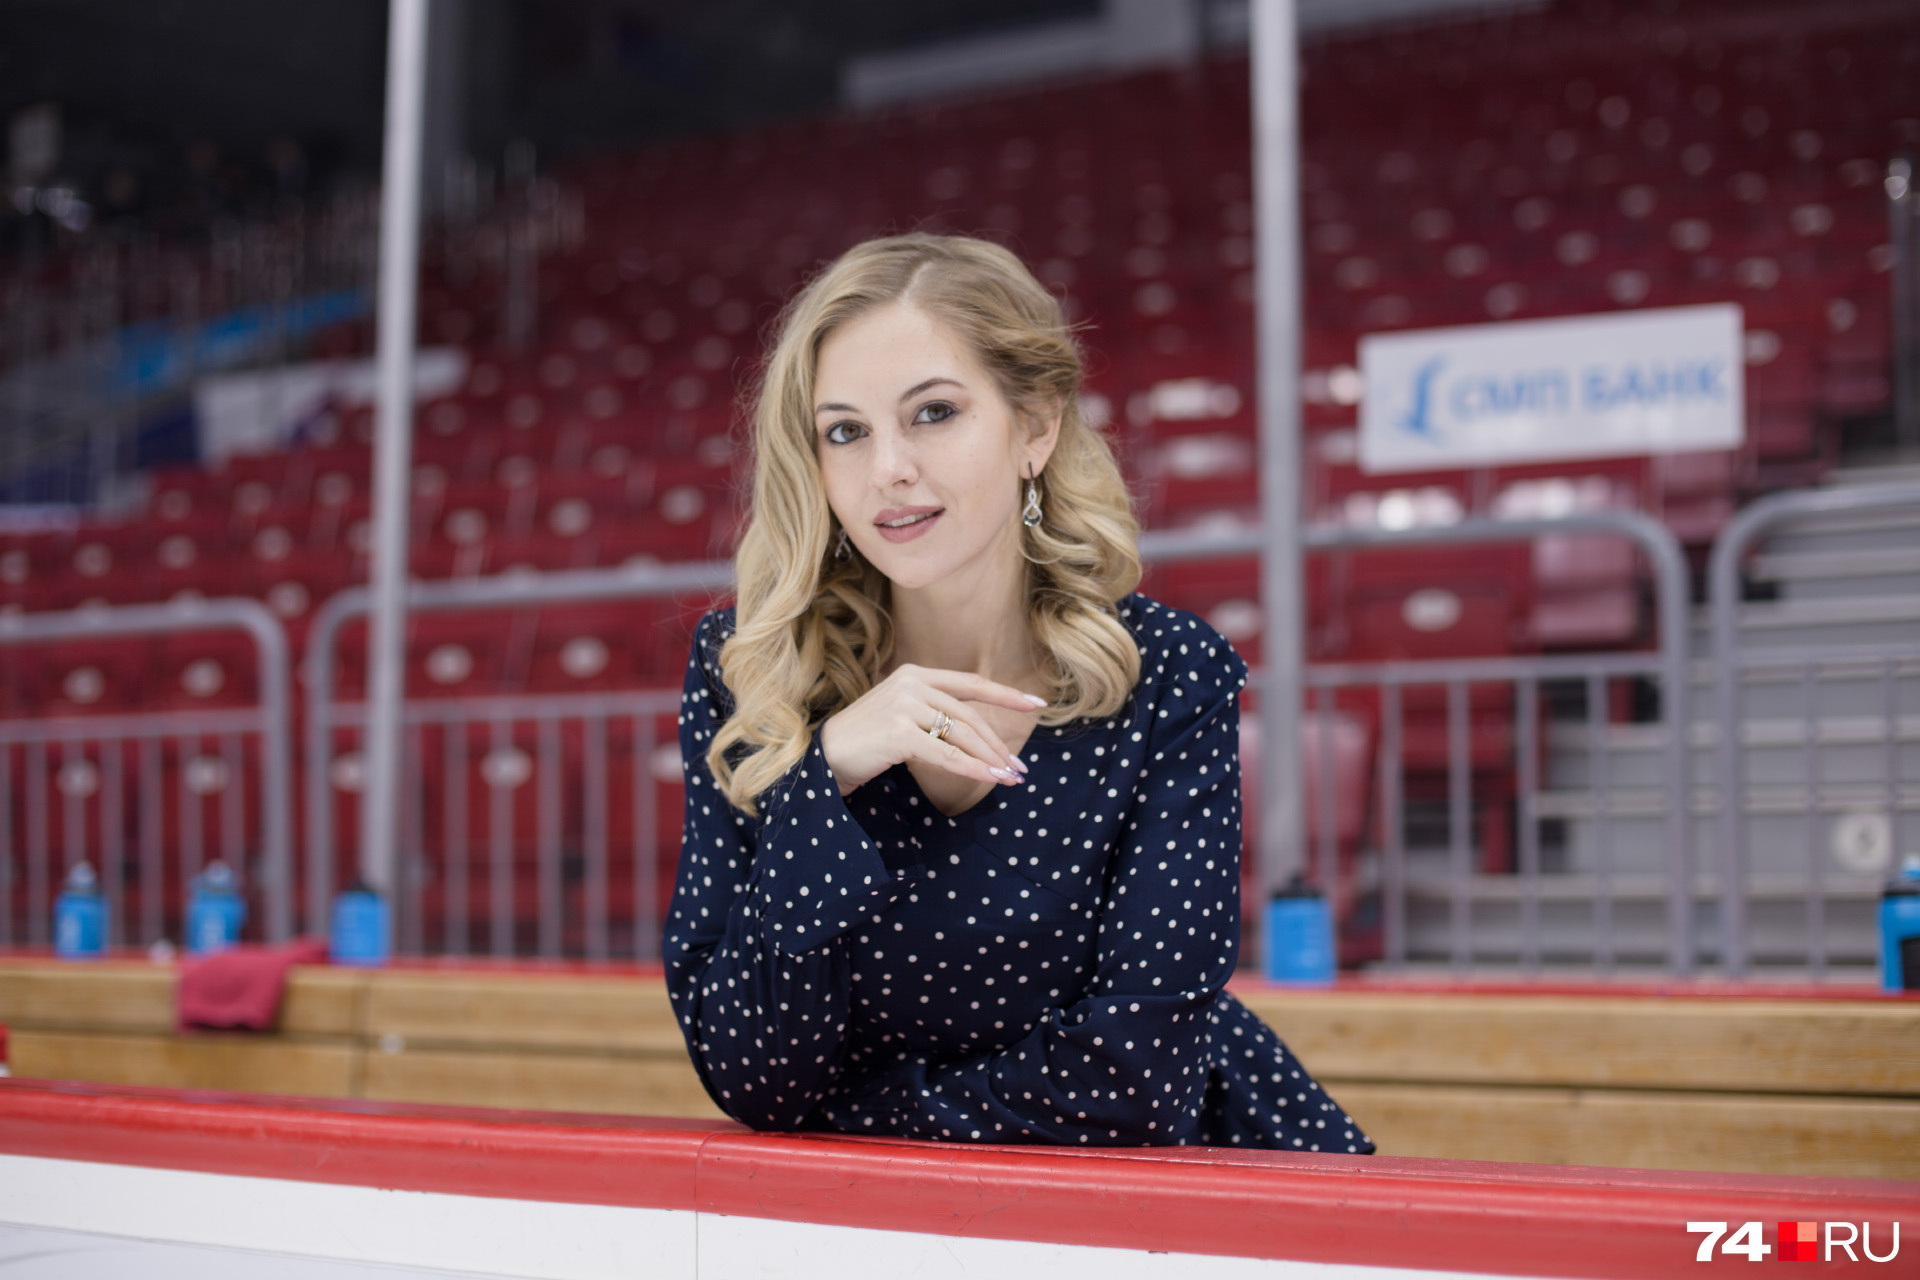 Хоккейный корреспондент — это далеко не единственная работа девушки